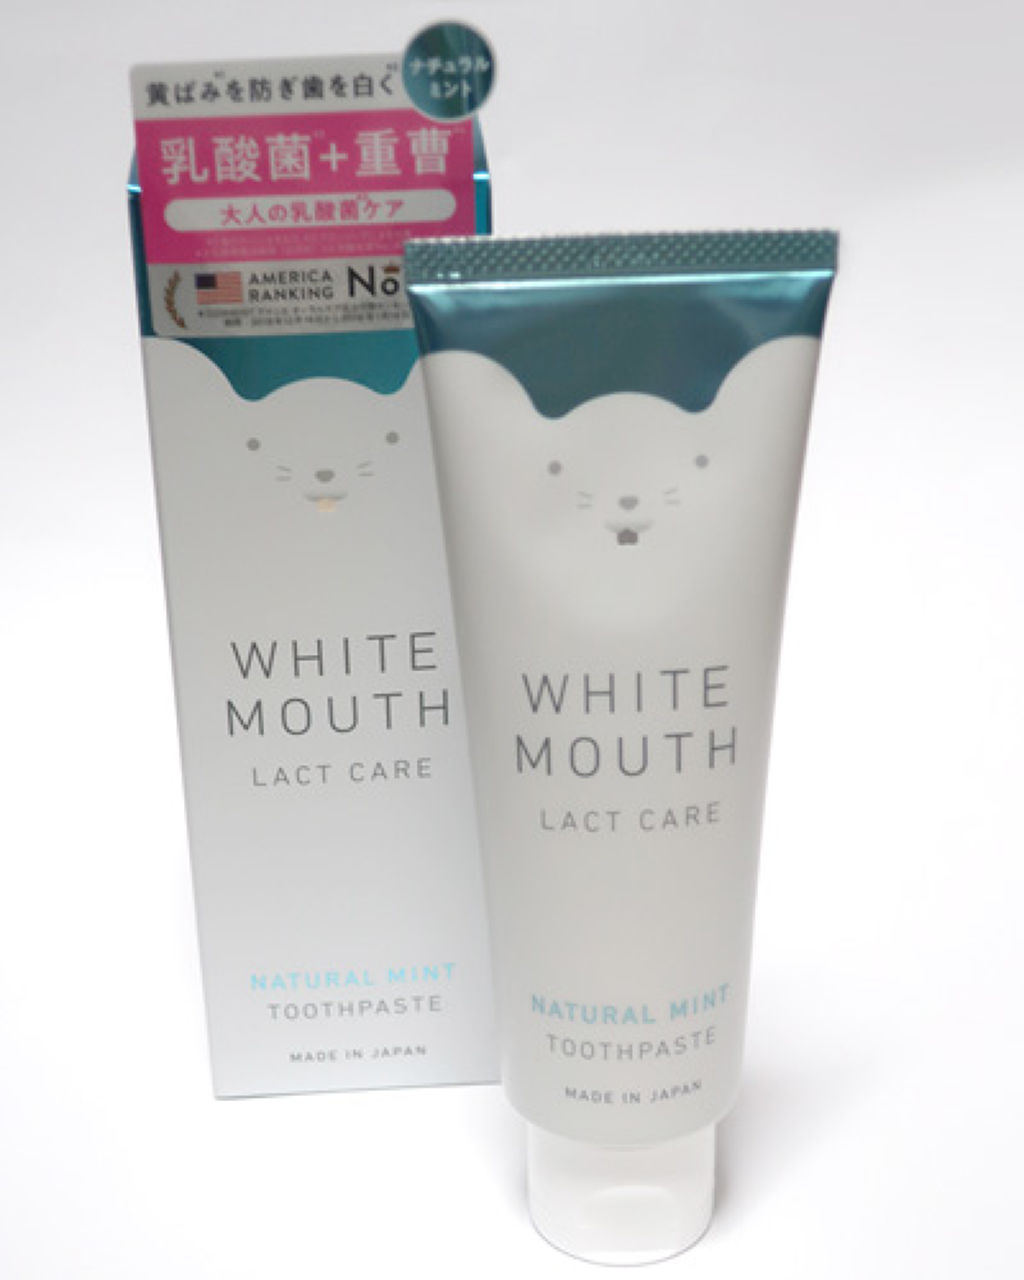 デンタルクレンジングペースト ホワイトマウスの口コミ ホワイトマウスのかわいいパッケージデザイン By Harumi7701 乾燥肌 30代前半 Lips